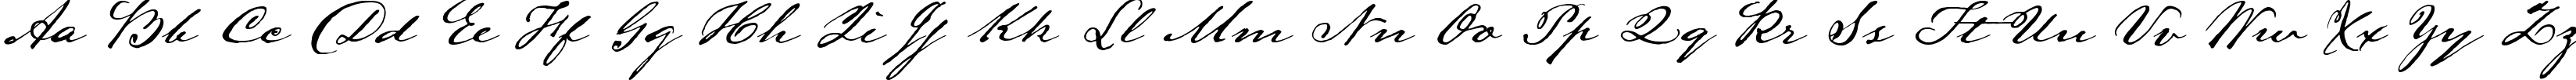 Пример написания английского алфавита шрифтом LamarPen